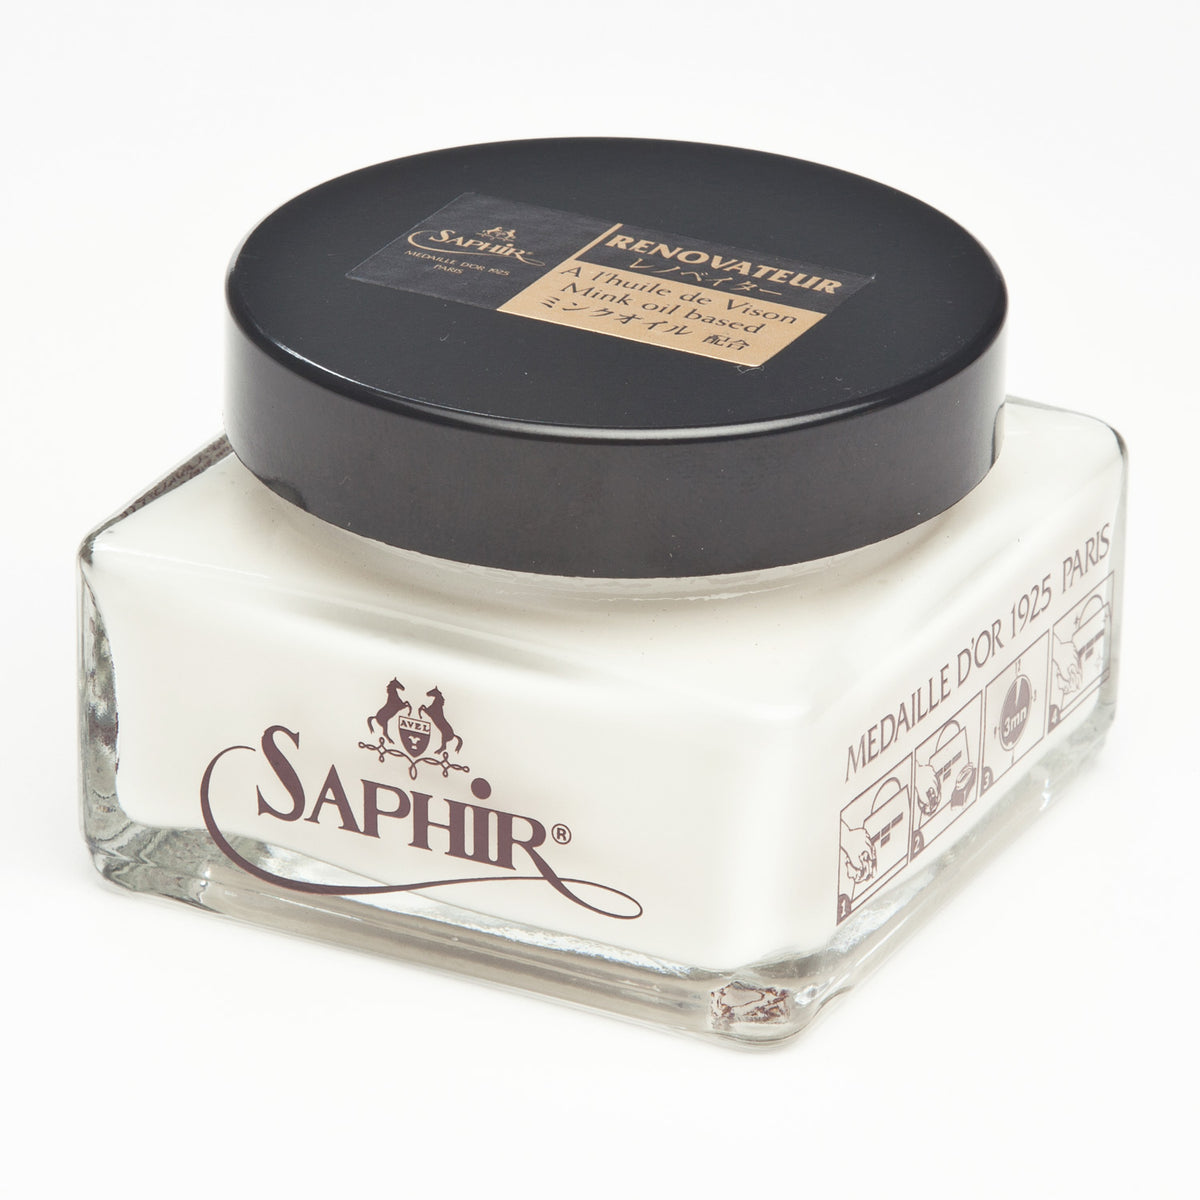 Saphir Creme Delicate Conditioning Cream